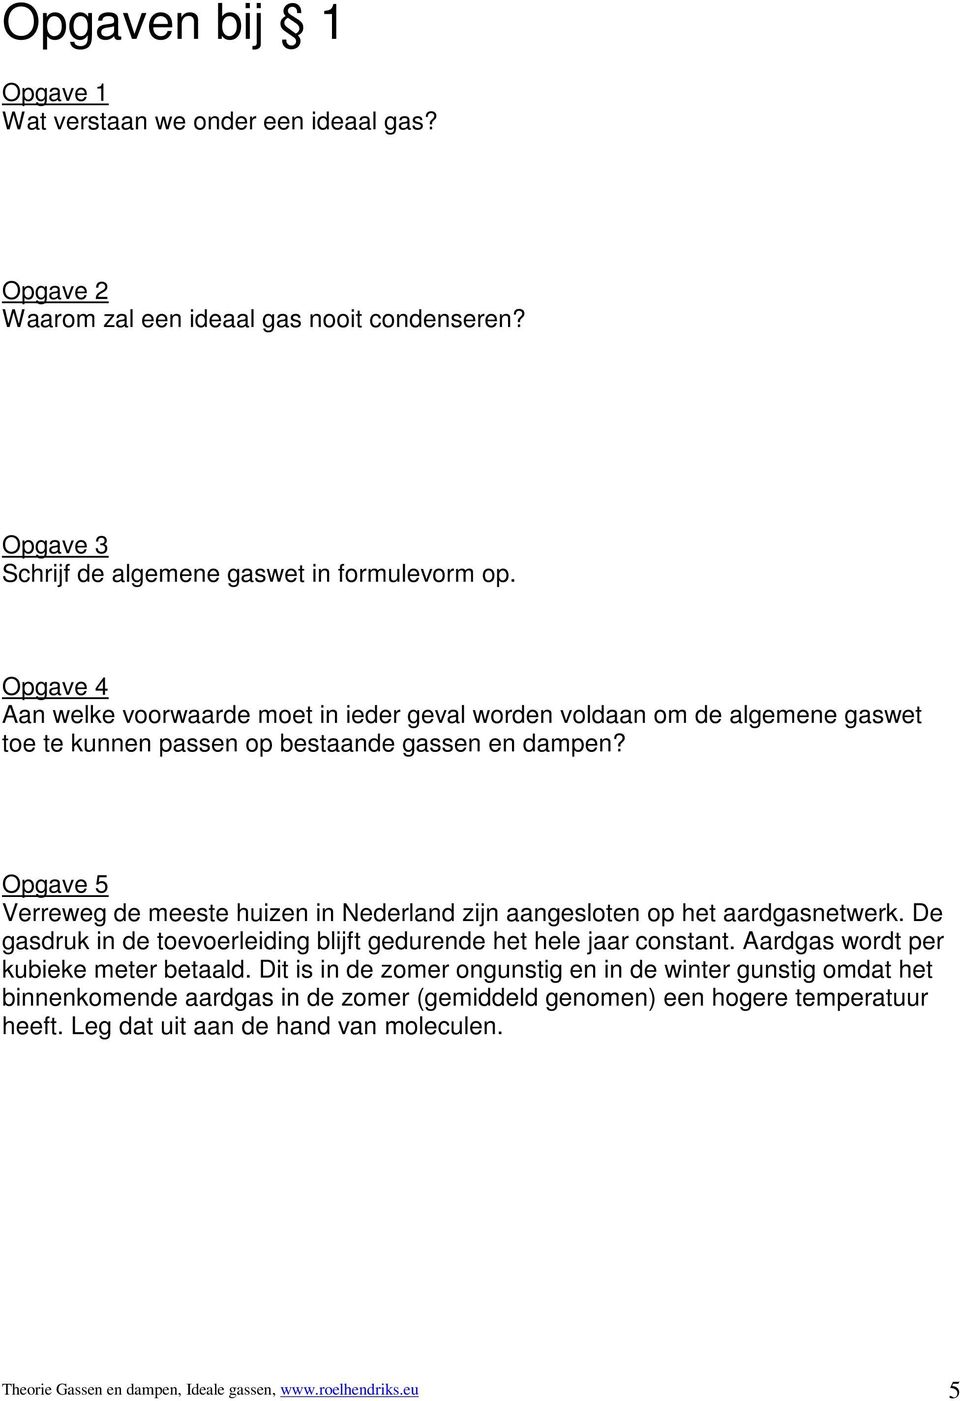 Opgave 5 Verreweg de meeste huizen in Nederland zijn aangesloten op het aardgasnetwerk. De gasdruk in de toevoerleiding blijft gedurende het hele jaar constant.